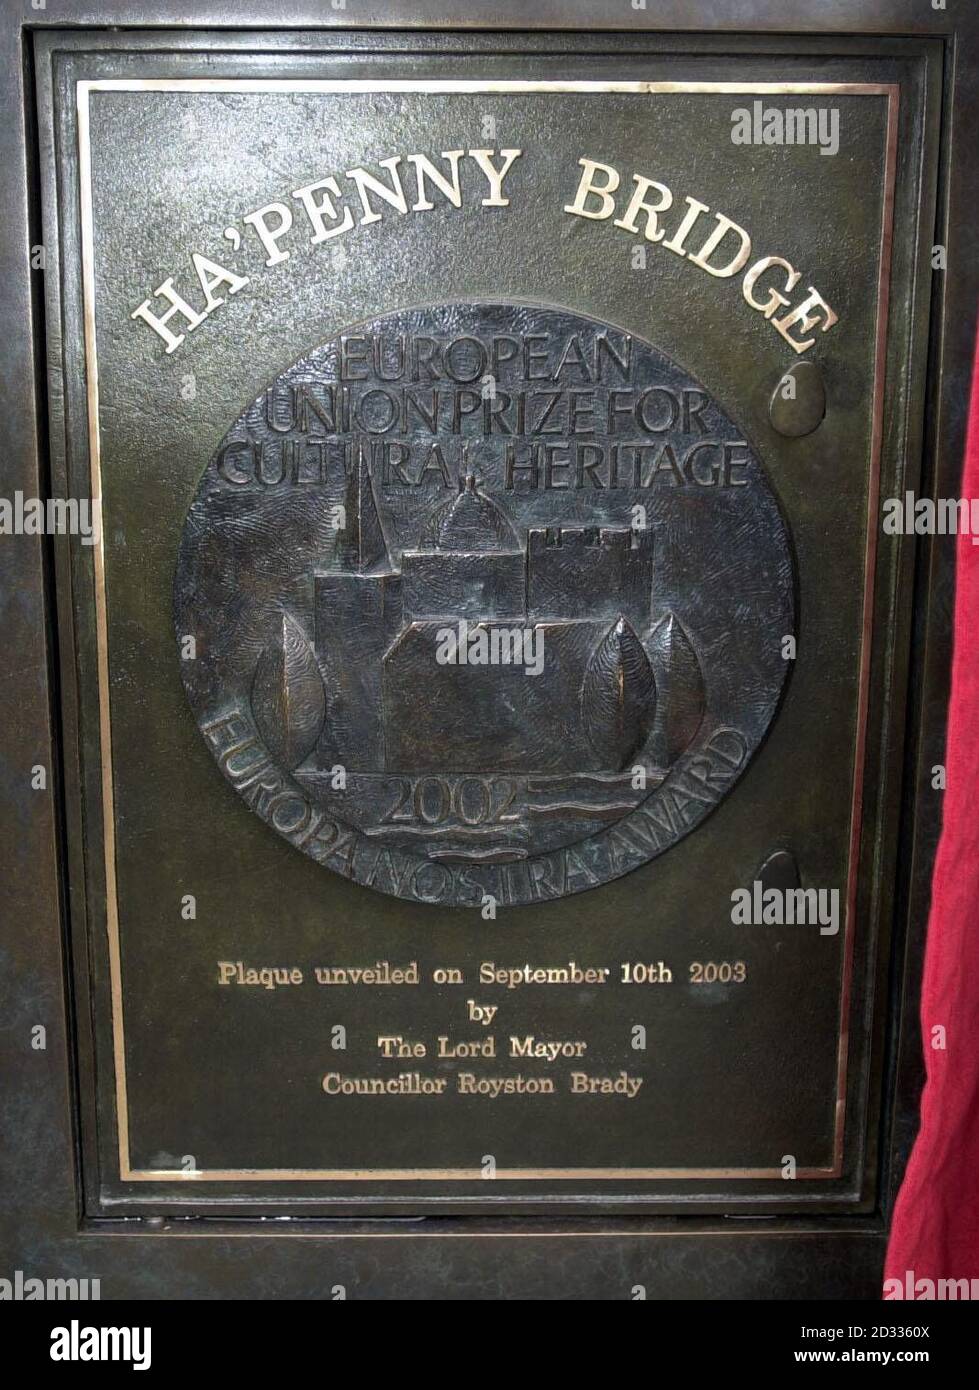 Die Gedenktafel, die der Oberbürgermeister von Dublin, Royston Brady, und die Ratsmitglied von Europa Nostra, Frau Consuelo O'Connor, an der Ha'Penny Bridge in der irischen Hauptstadt enthüllt haben, um des Europa Nostra Awards der Brücke zu gedenken, wurde für die jüngsten Restaurierungsarbeiten an der Struktur gewonnen. Die Ha'Penny Bridge (offically Wellington Bridge after the 'Iron Duke') wurde 1816 eröffnet und war die einzige Fußgängerbrücke auf der Liffey, bis die neue Millennium Bridge weiter oben 2000 eröffnet wurde. In Coalbrookdale in Shropshire in England gegossen, erwarb die Brücke ihren inoffiziellen Titel von der Maut, die an cro gezahlt wurde Stockfoto